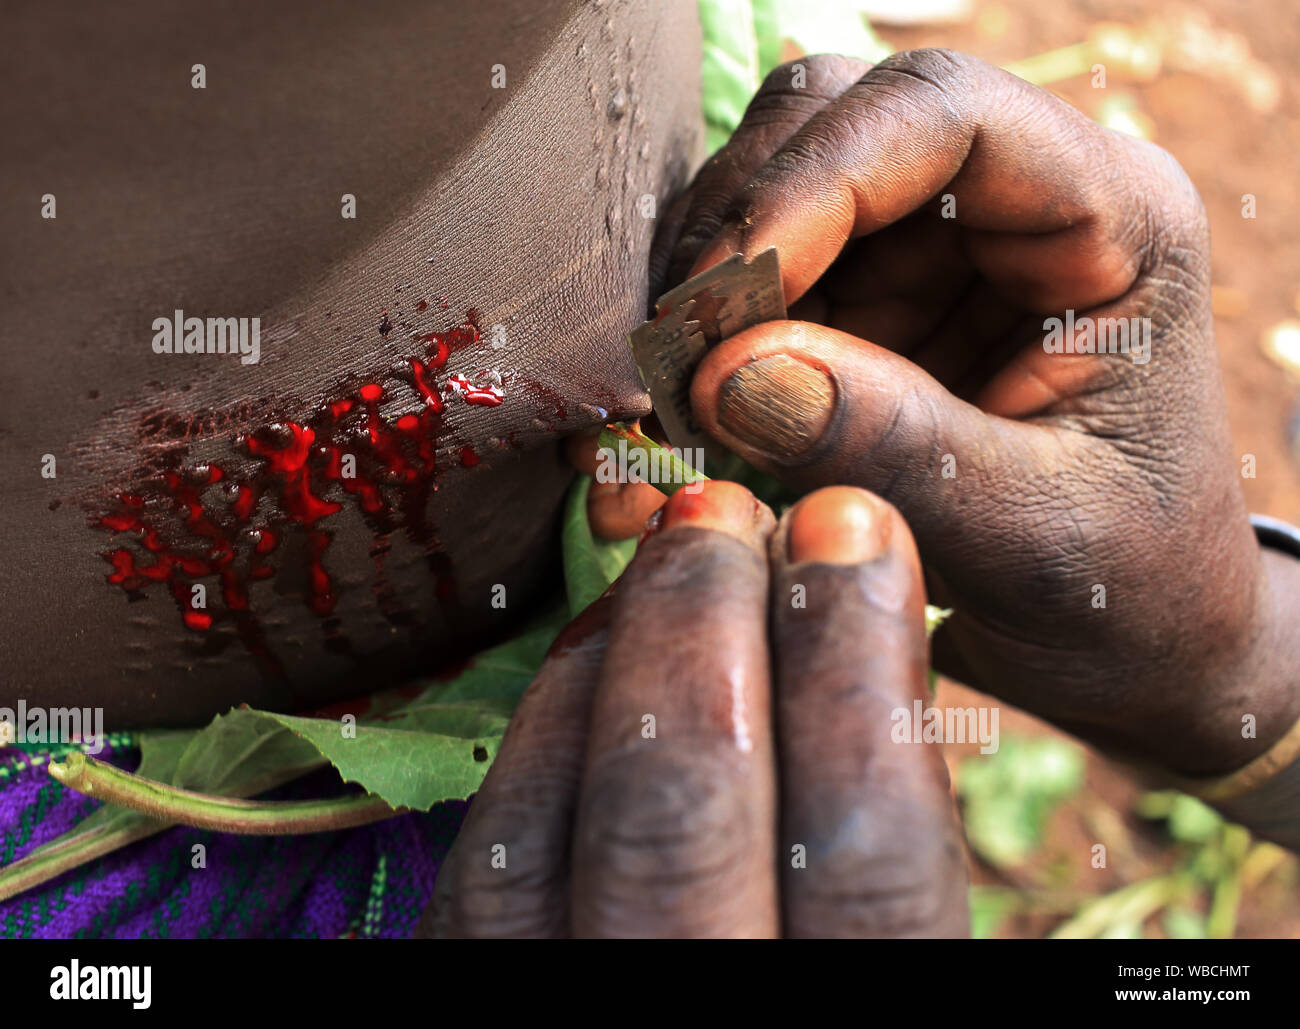 Scarification with razor blade, Suri, Ethiopia Stock Photo